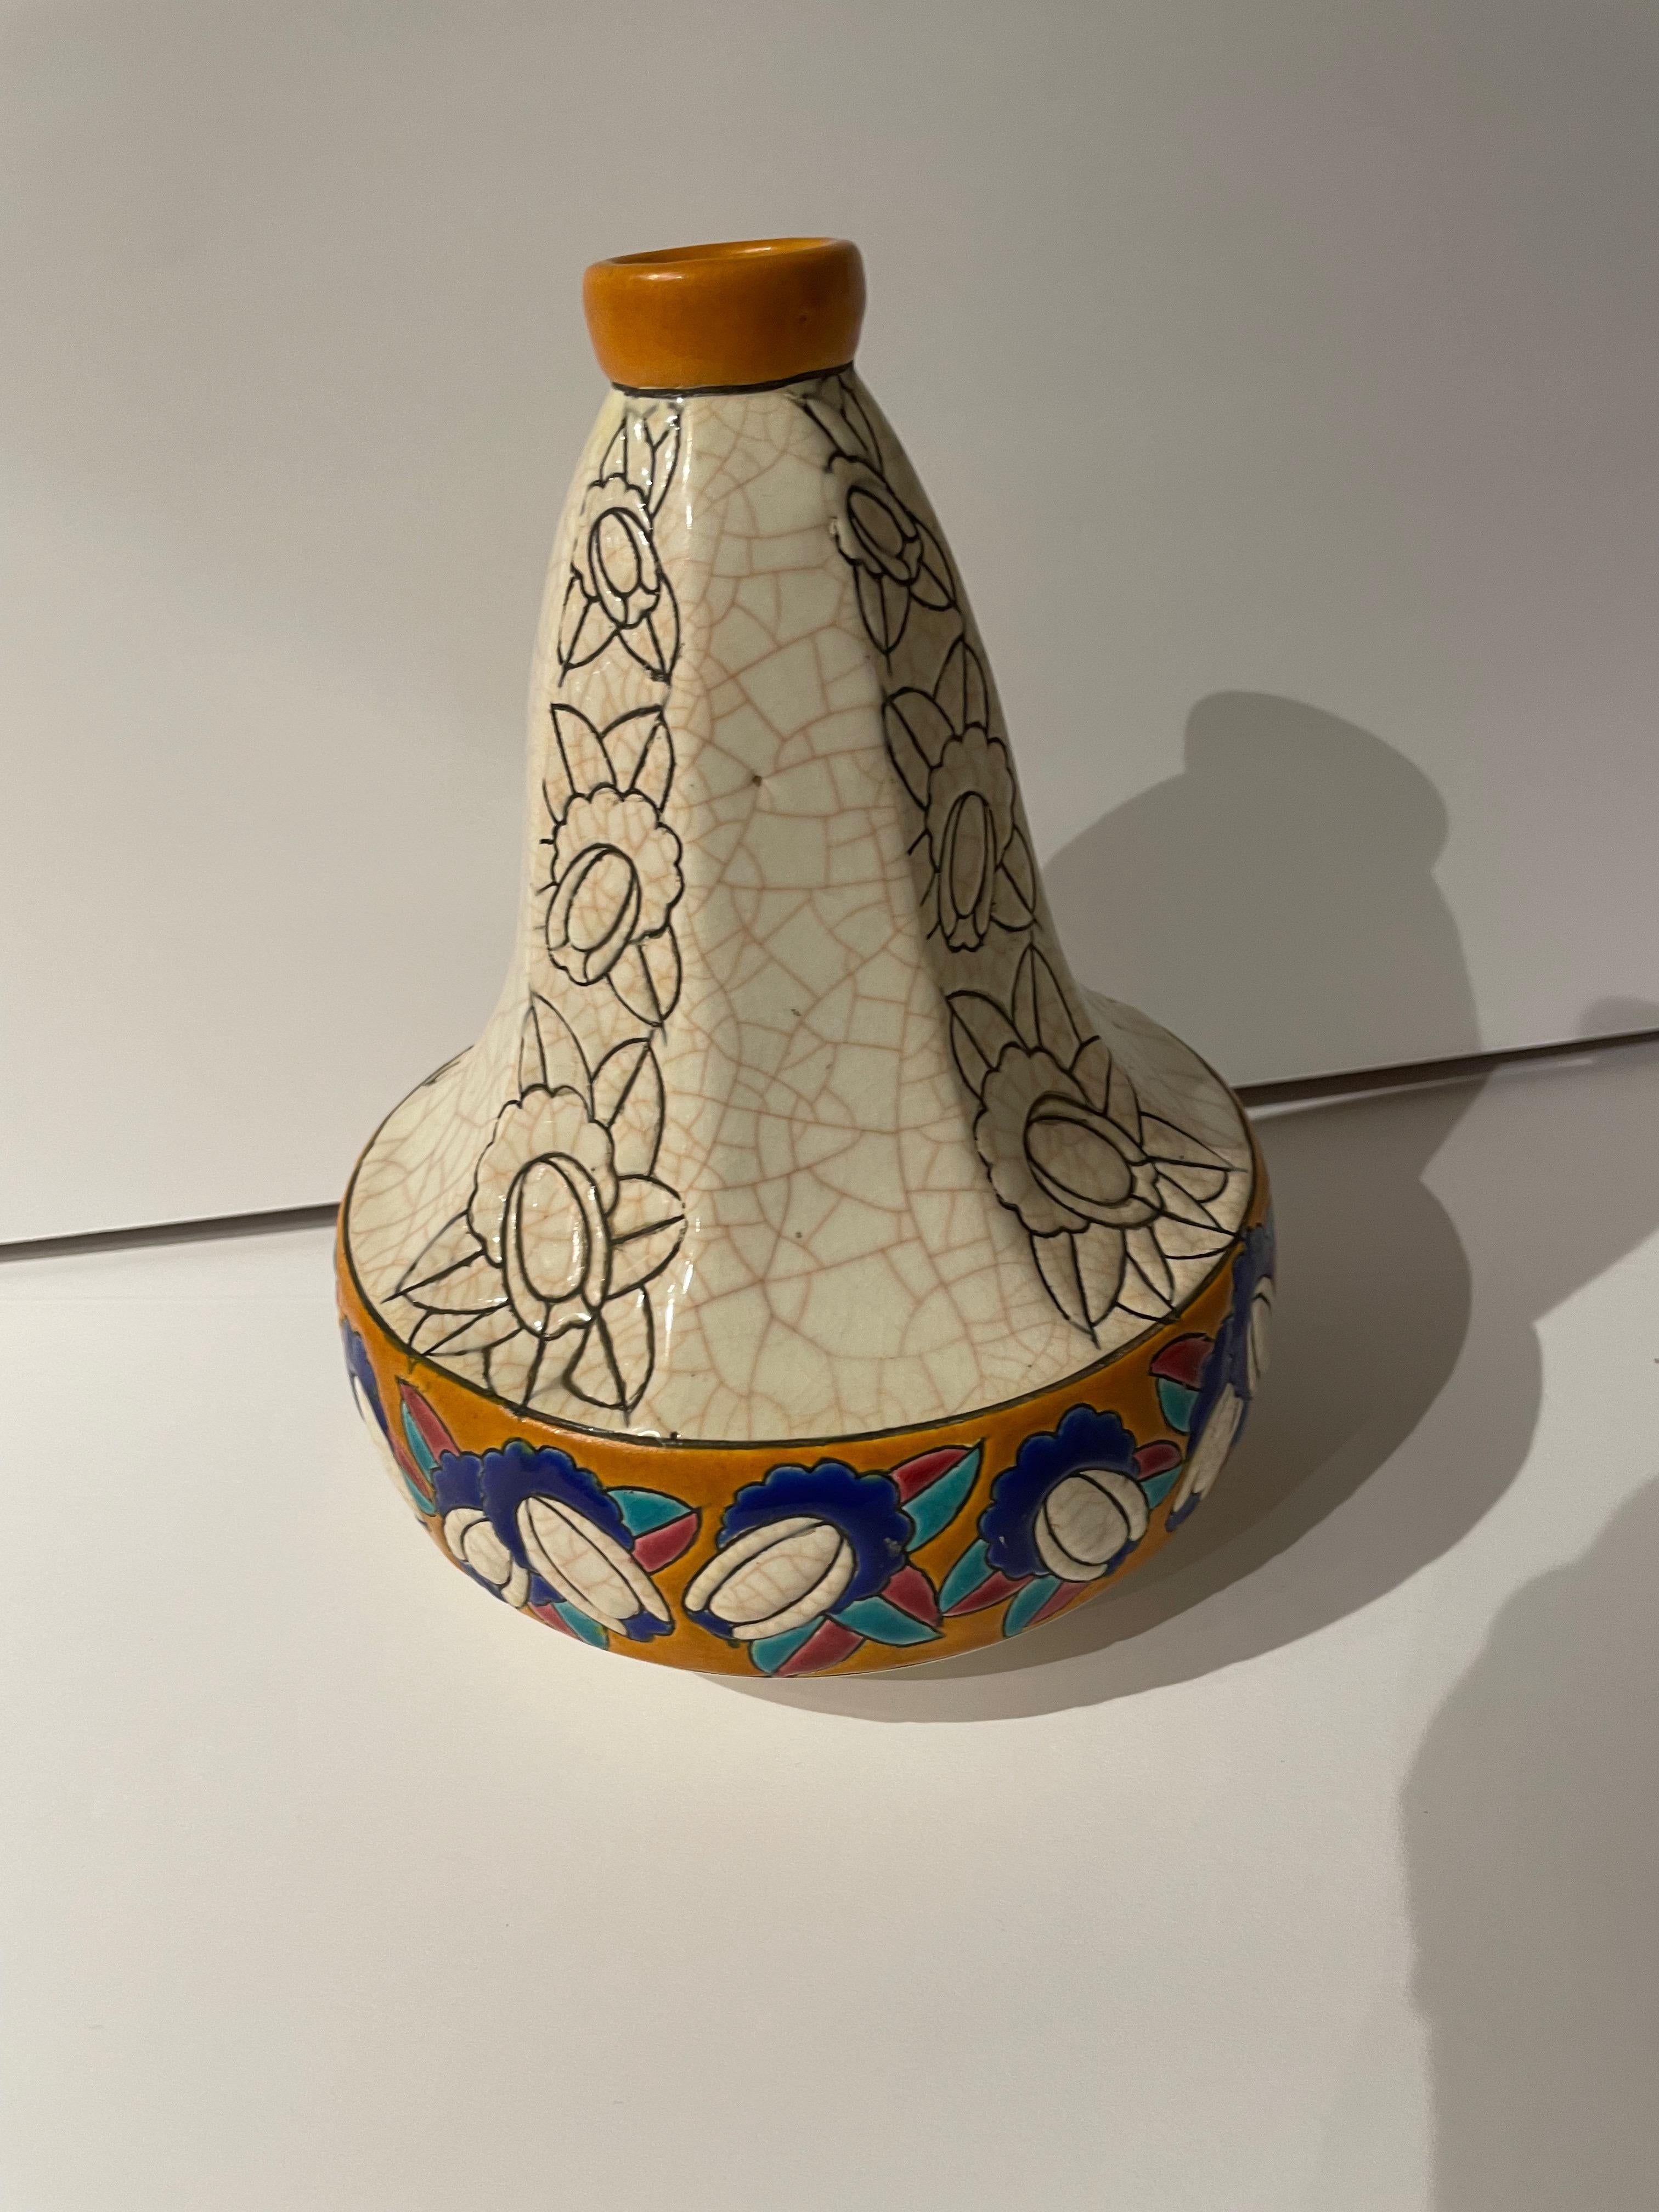 Eine Art-Déco-Vase von Longwy aus Frankreich in der charakteristischen birnen- oder kürbisförmigen Form, die so viele ihrer Kreationen aufweisen. Glatte, facettierte Seiten wechseln sich mit tief geätzten Motiven ab und führen hinunter zum